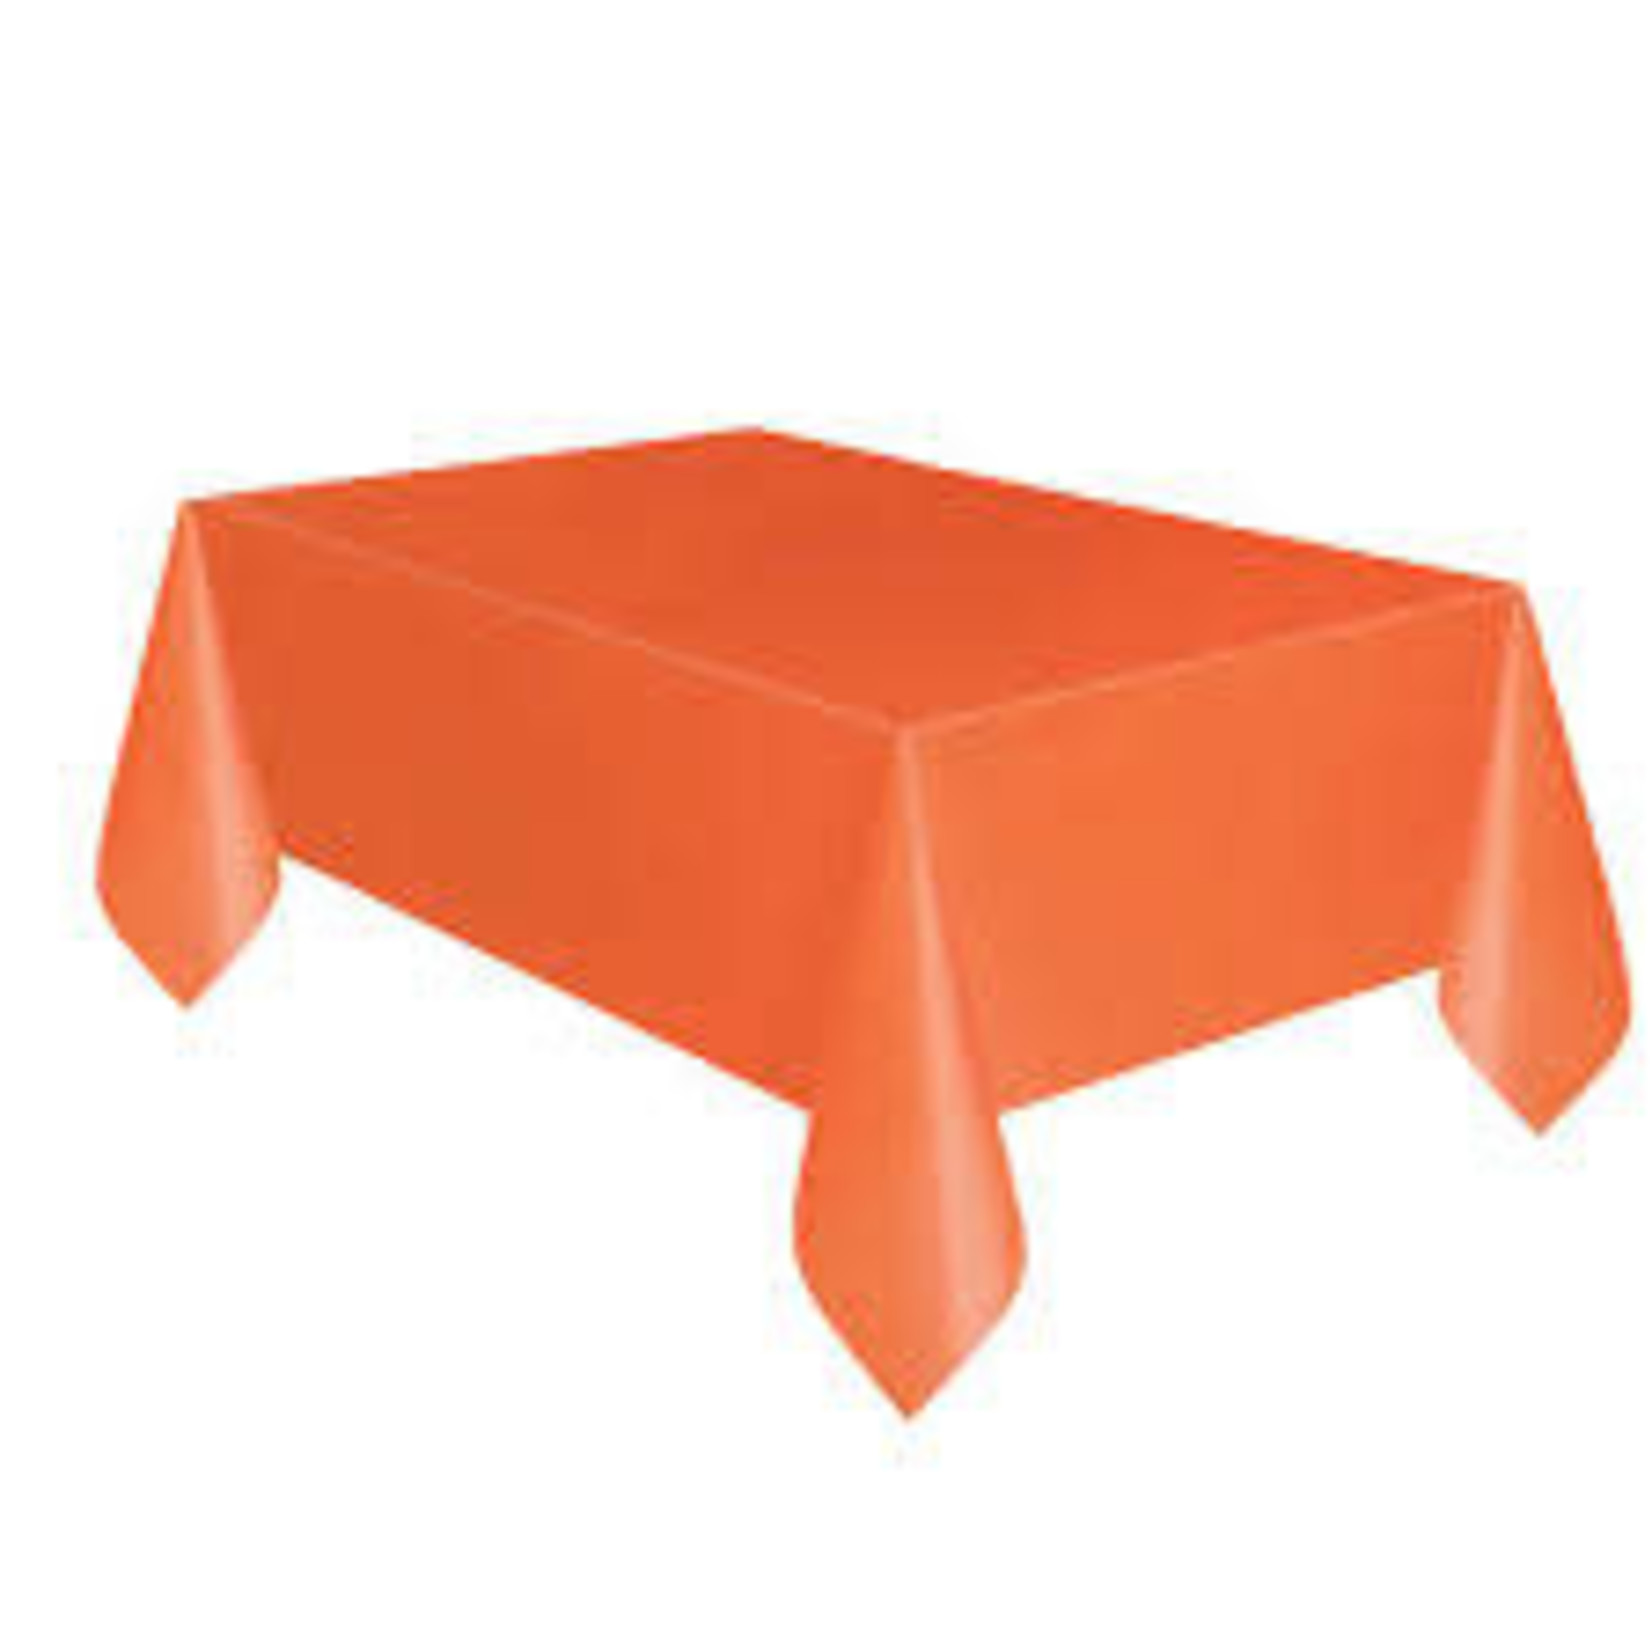 Pumpkin Orange Solid Rectangular Plastic Table Cover  54" x 108"